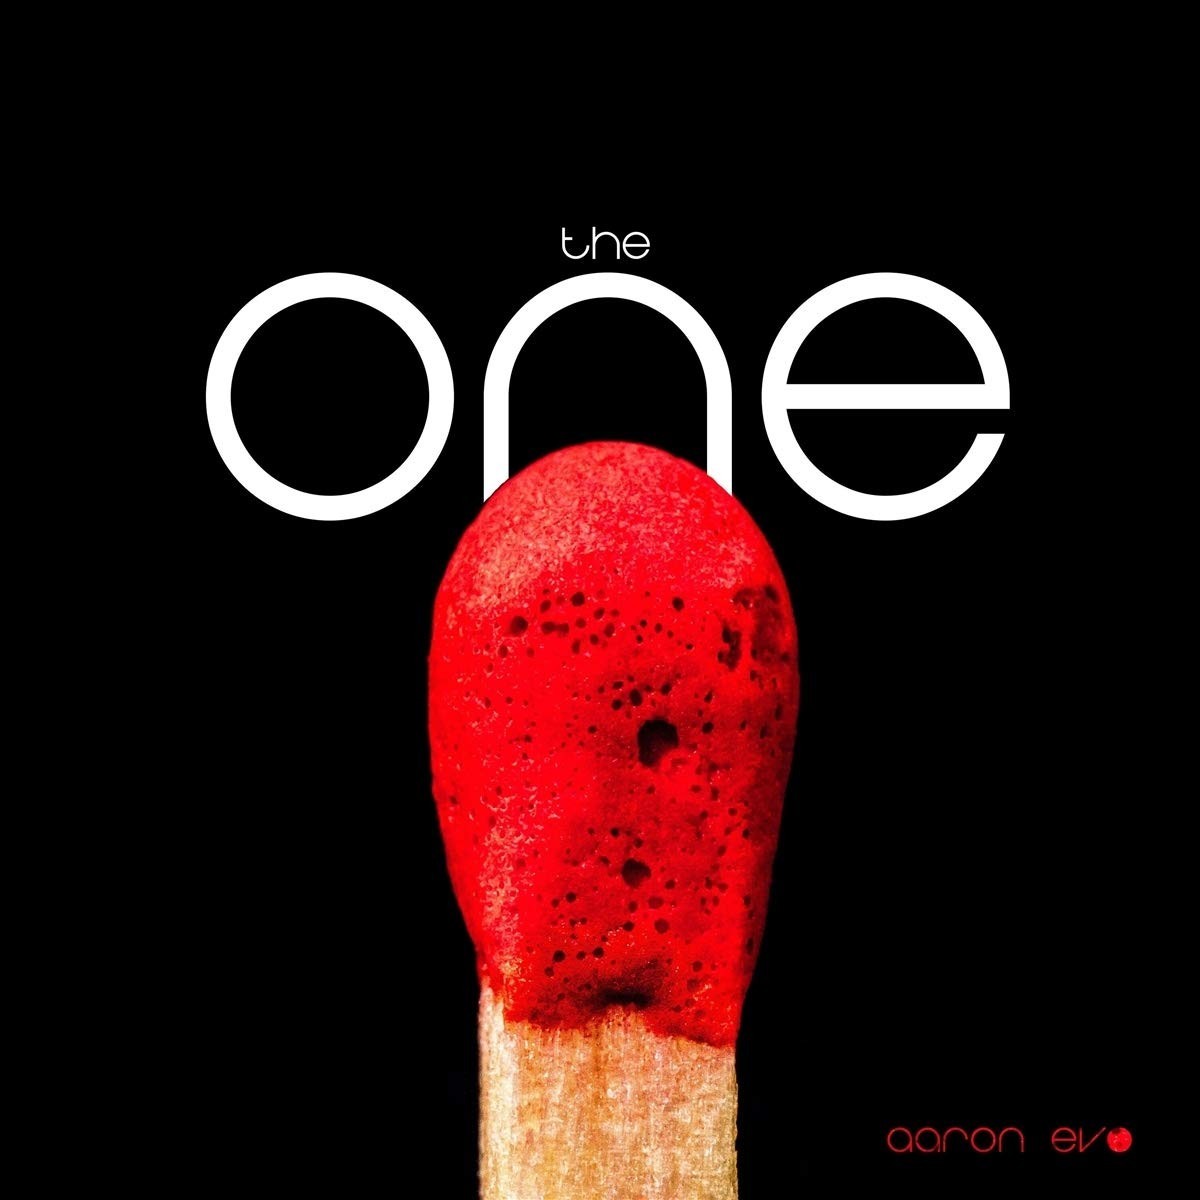 Aaron Evo - One